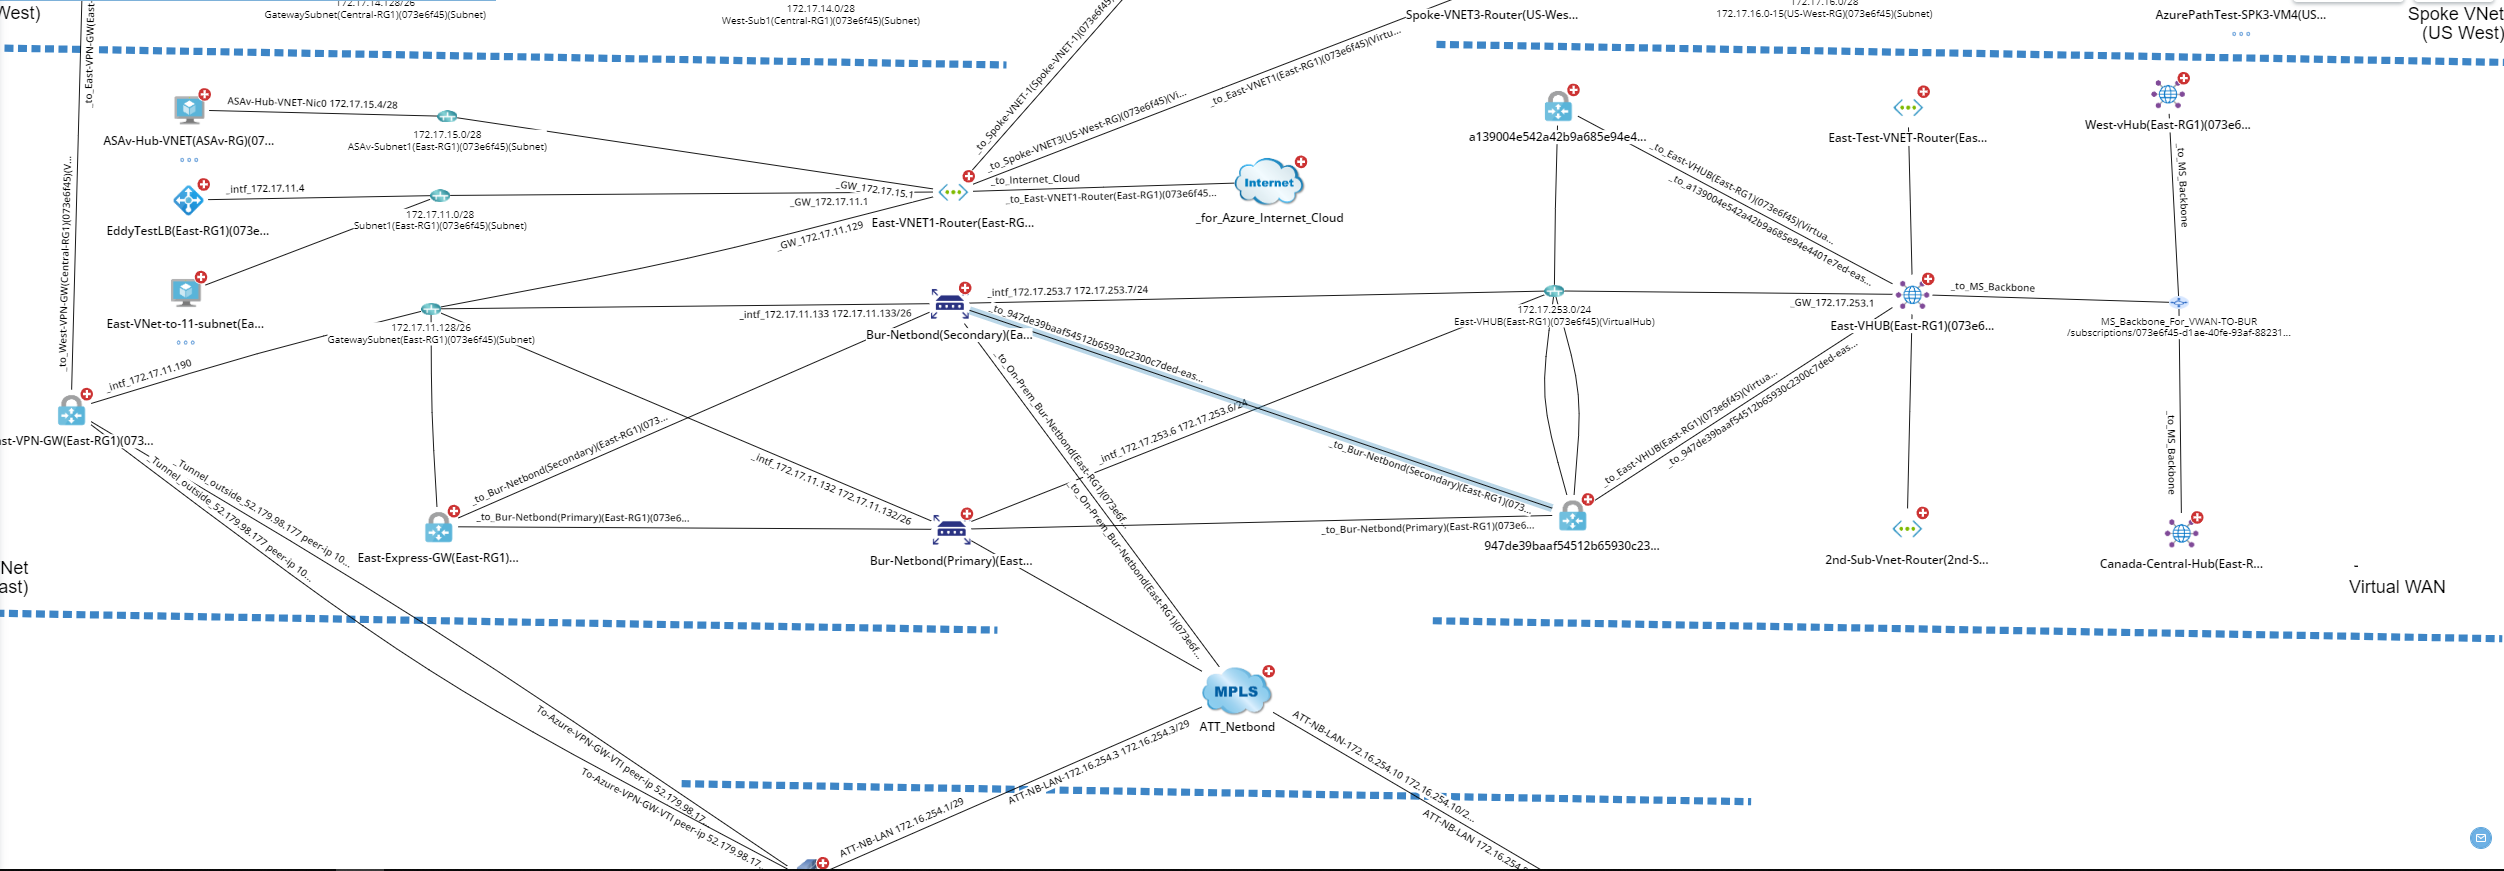 Multi-cloud Network Map From NetBrain v10.0